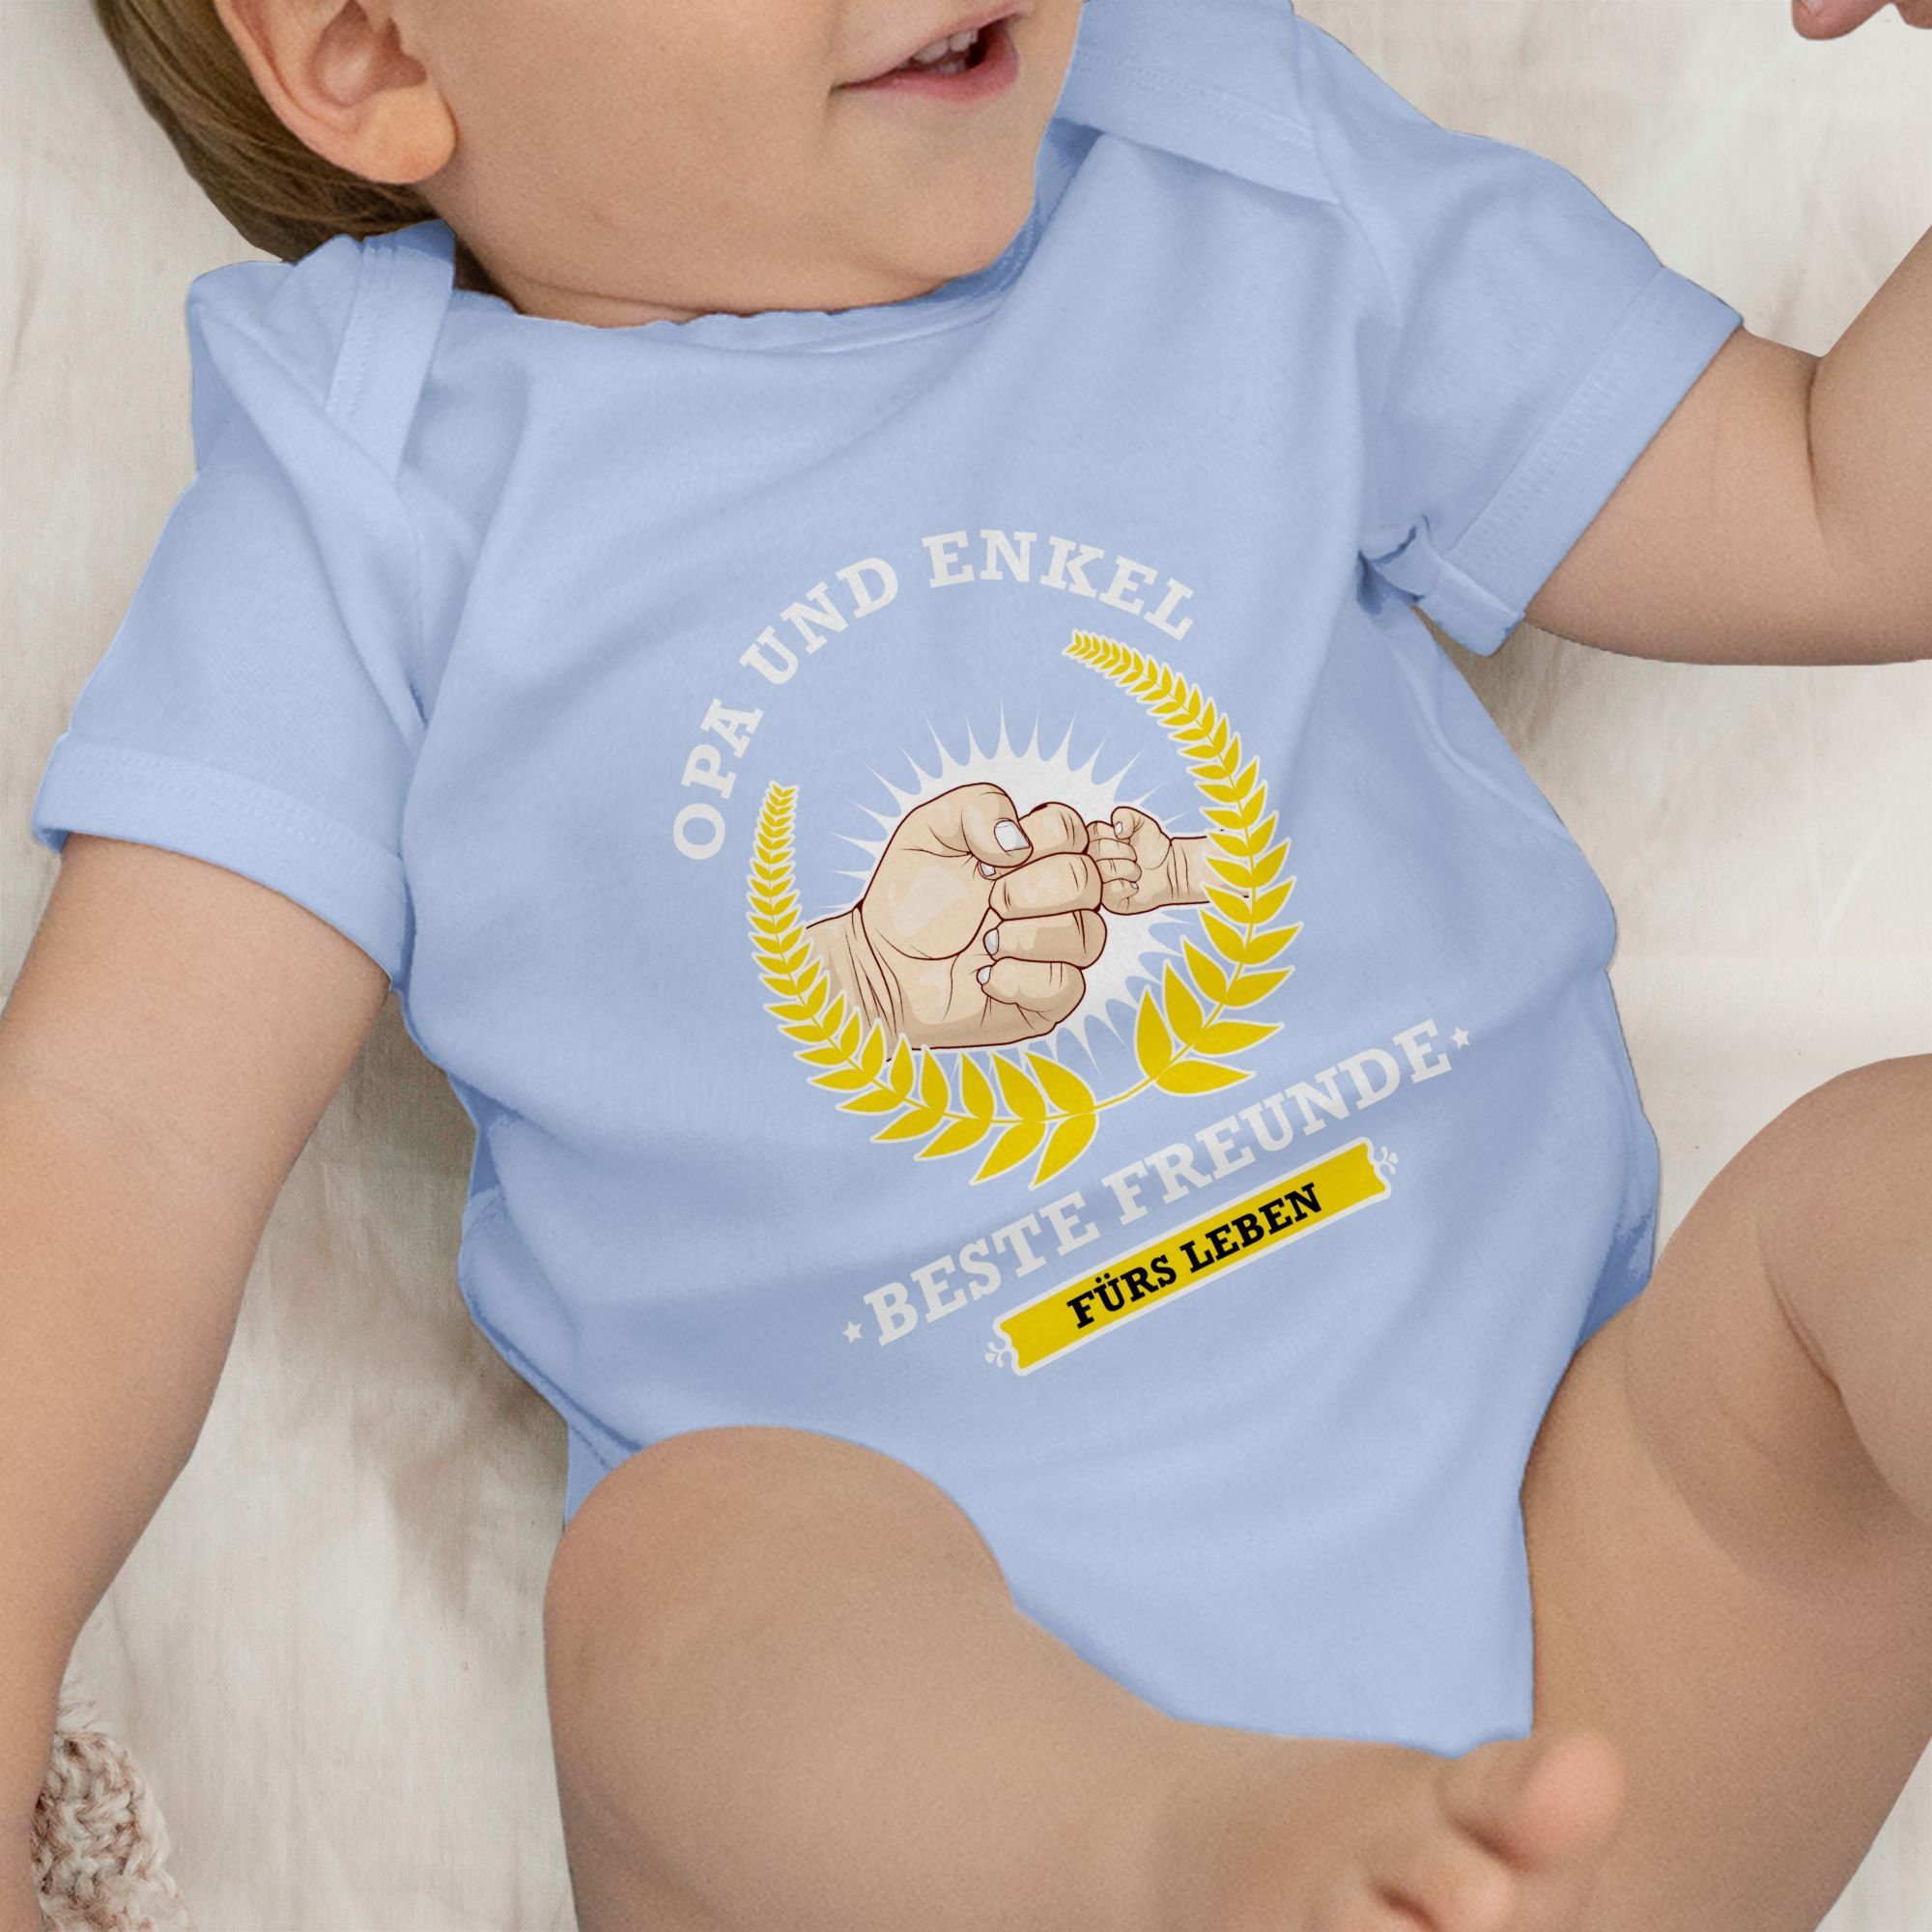 Shirtracer Shirtbody Opa und Enkel Leben Geburt 3 Babyblau fürs beste Freunde - Zur